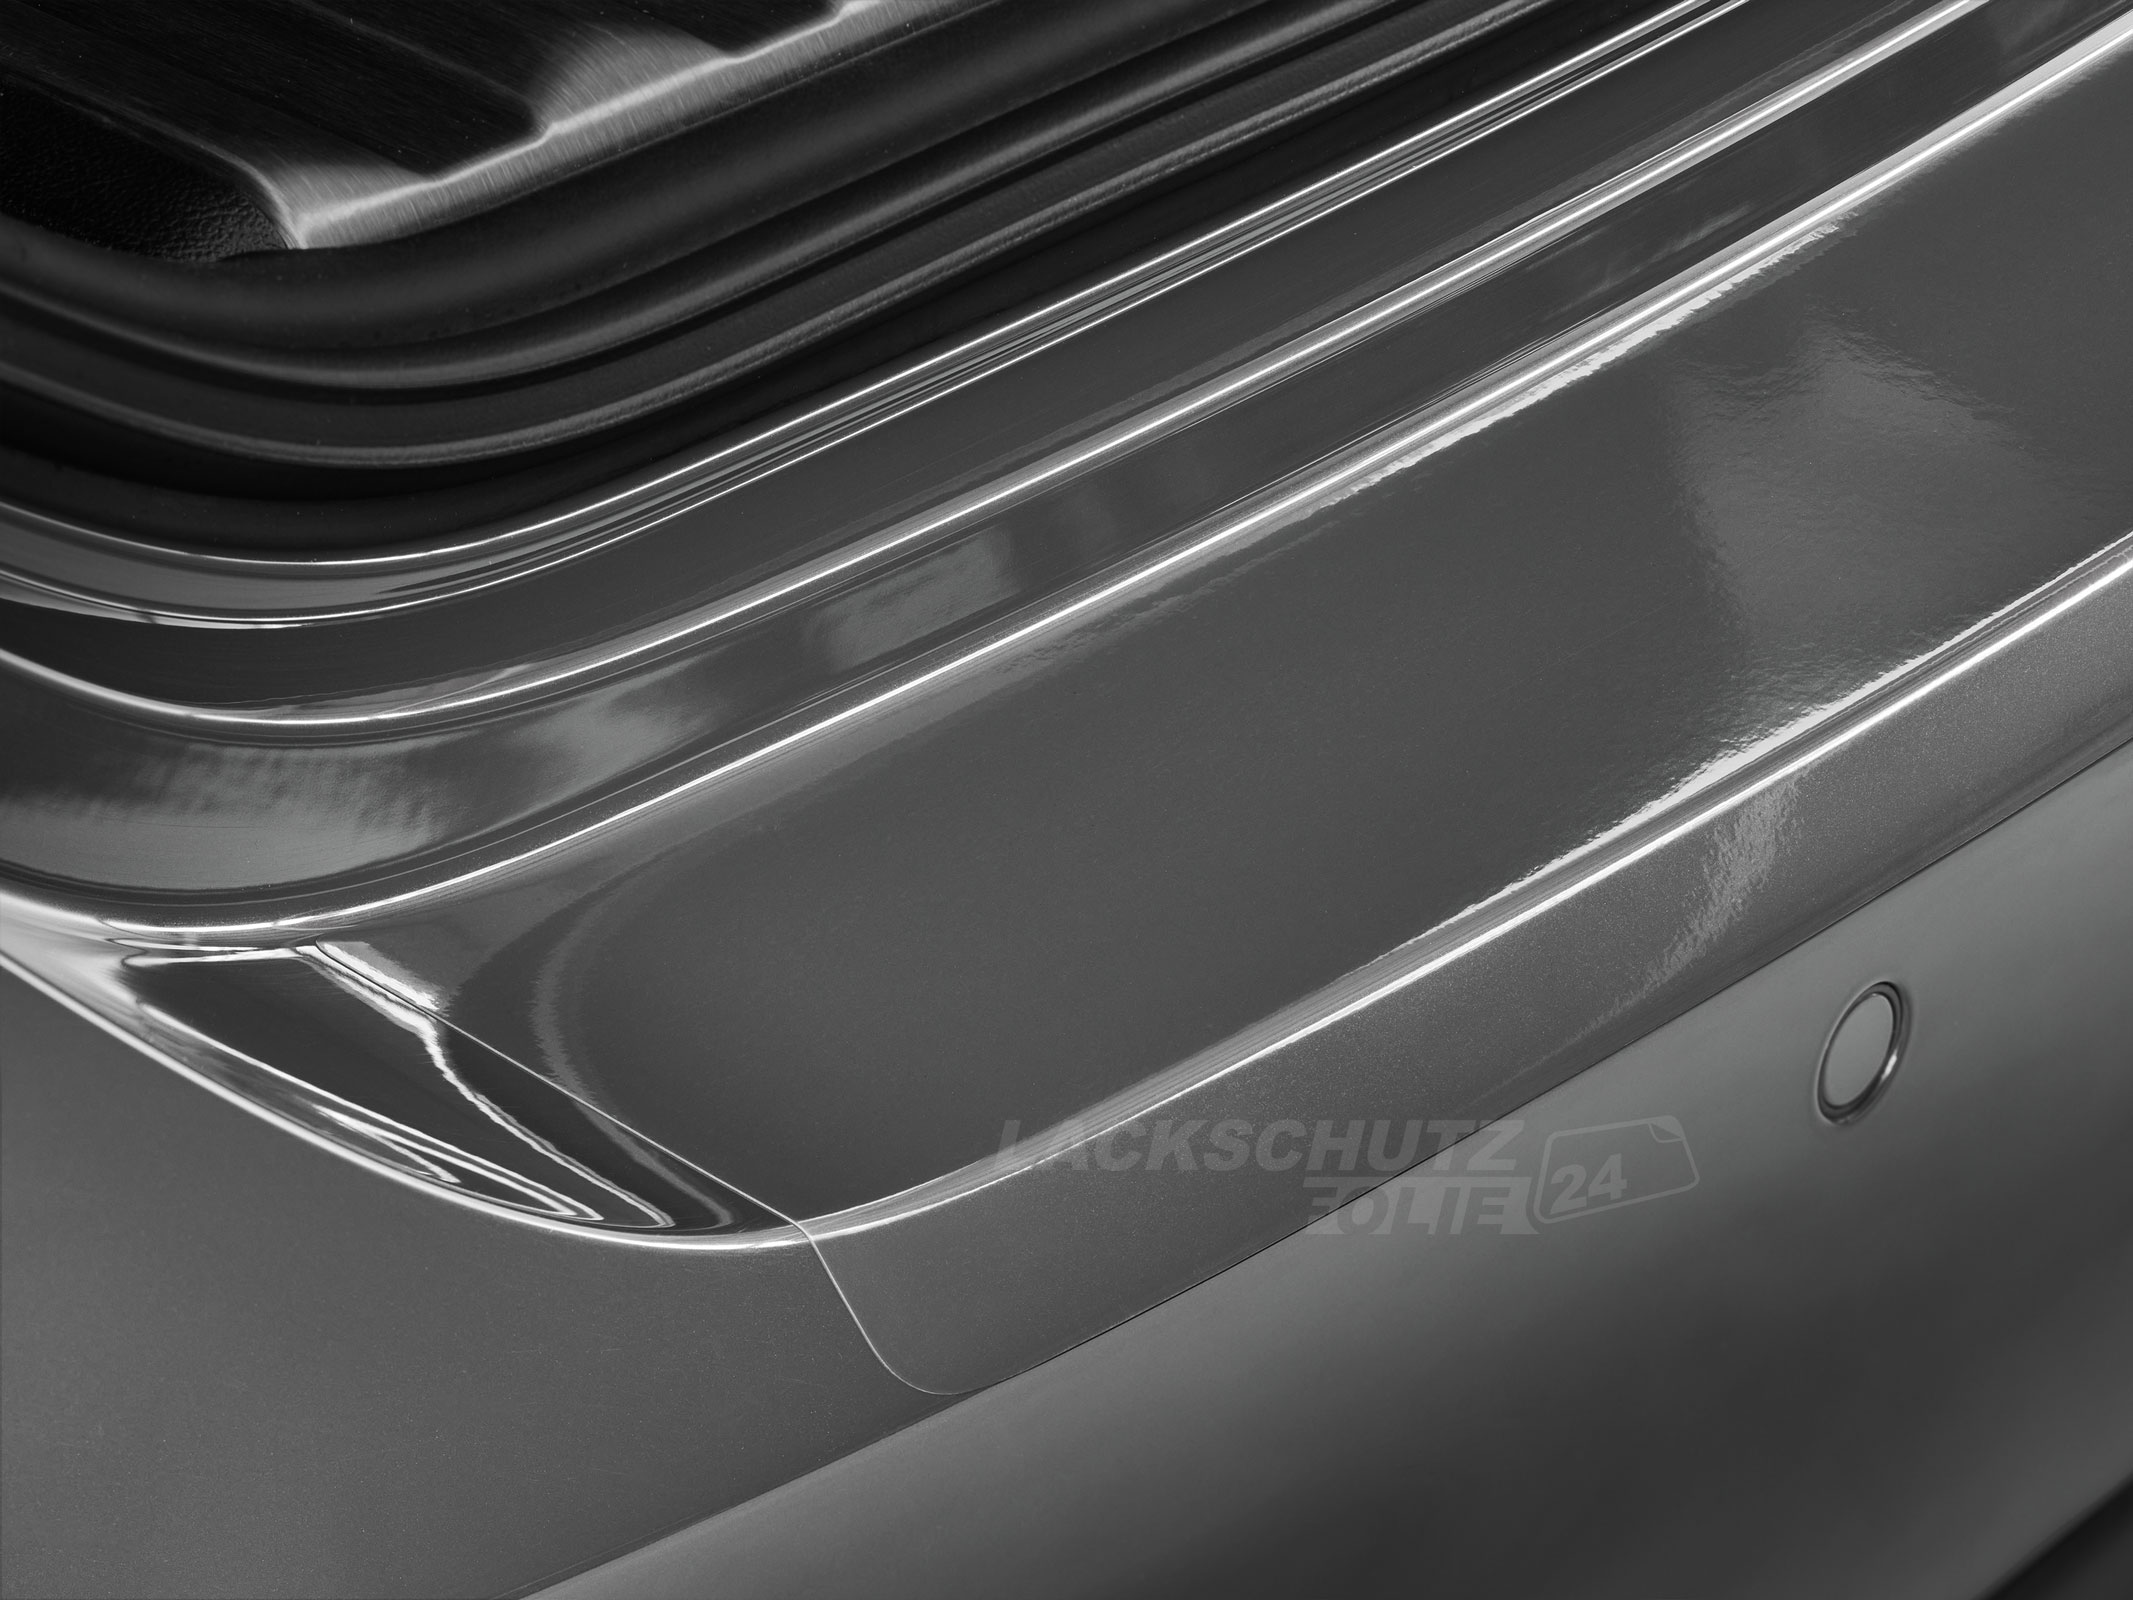 Ladekantenschutzfolie - Transparent Glatt Hochglänzend 150 µm stark für Smart ForTwo Typ 451, BJ 2007-2014